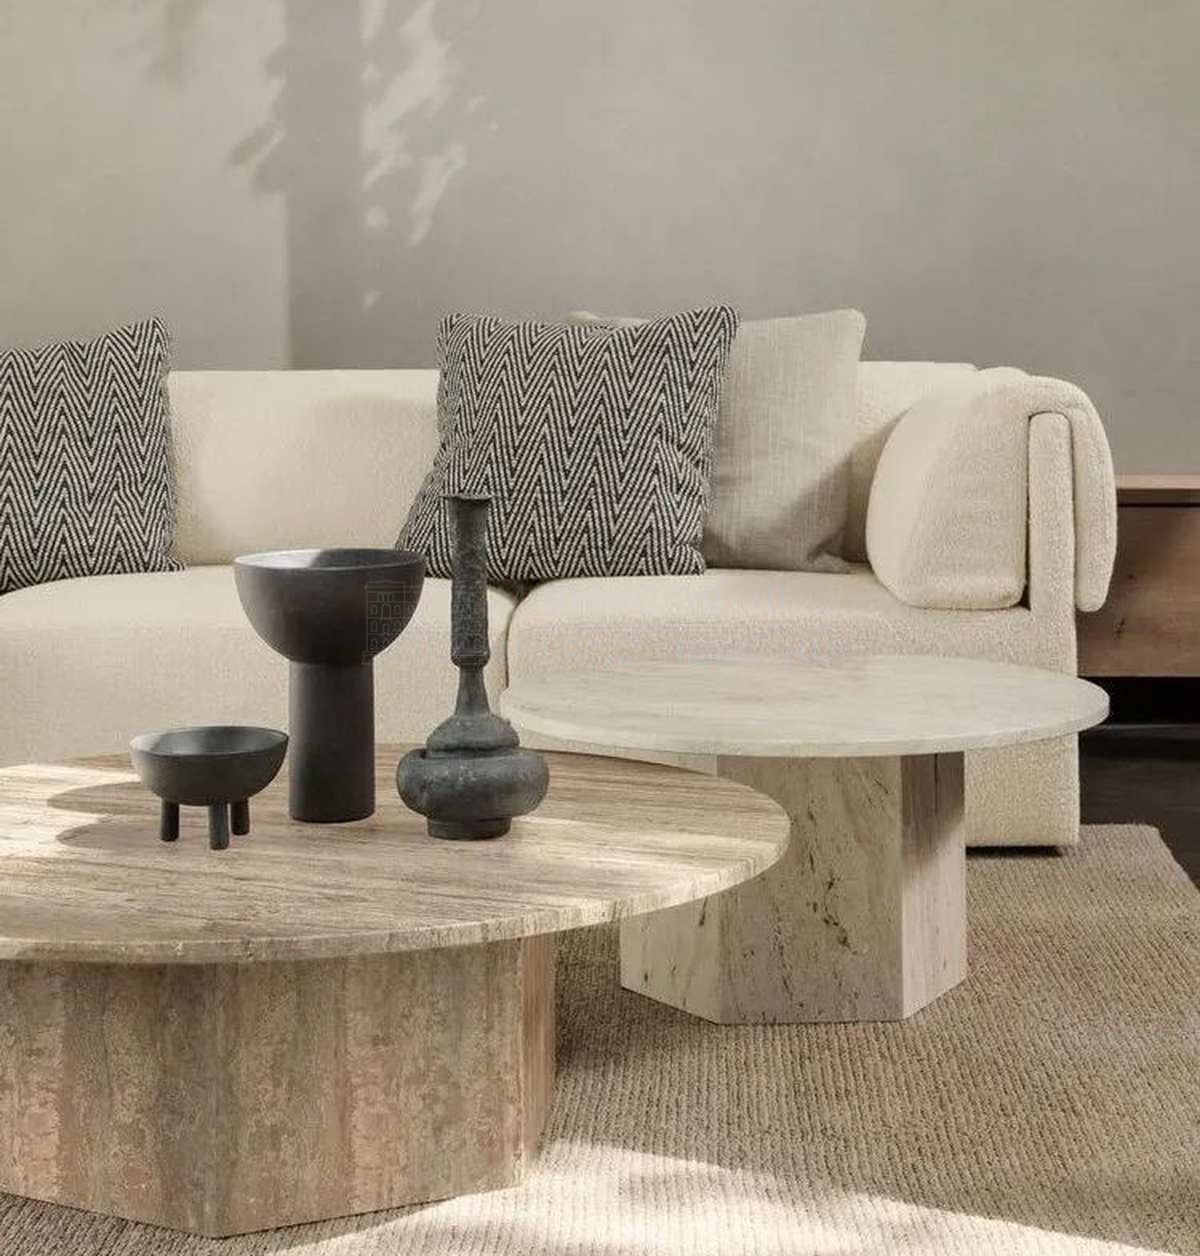 Прямой диван Wonder sofa straight with armrest из Дании фабрики GUBI